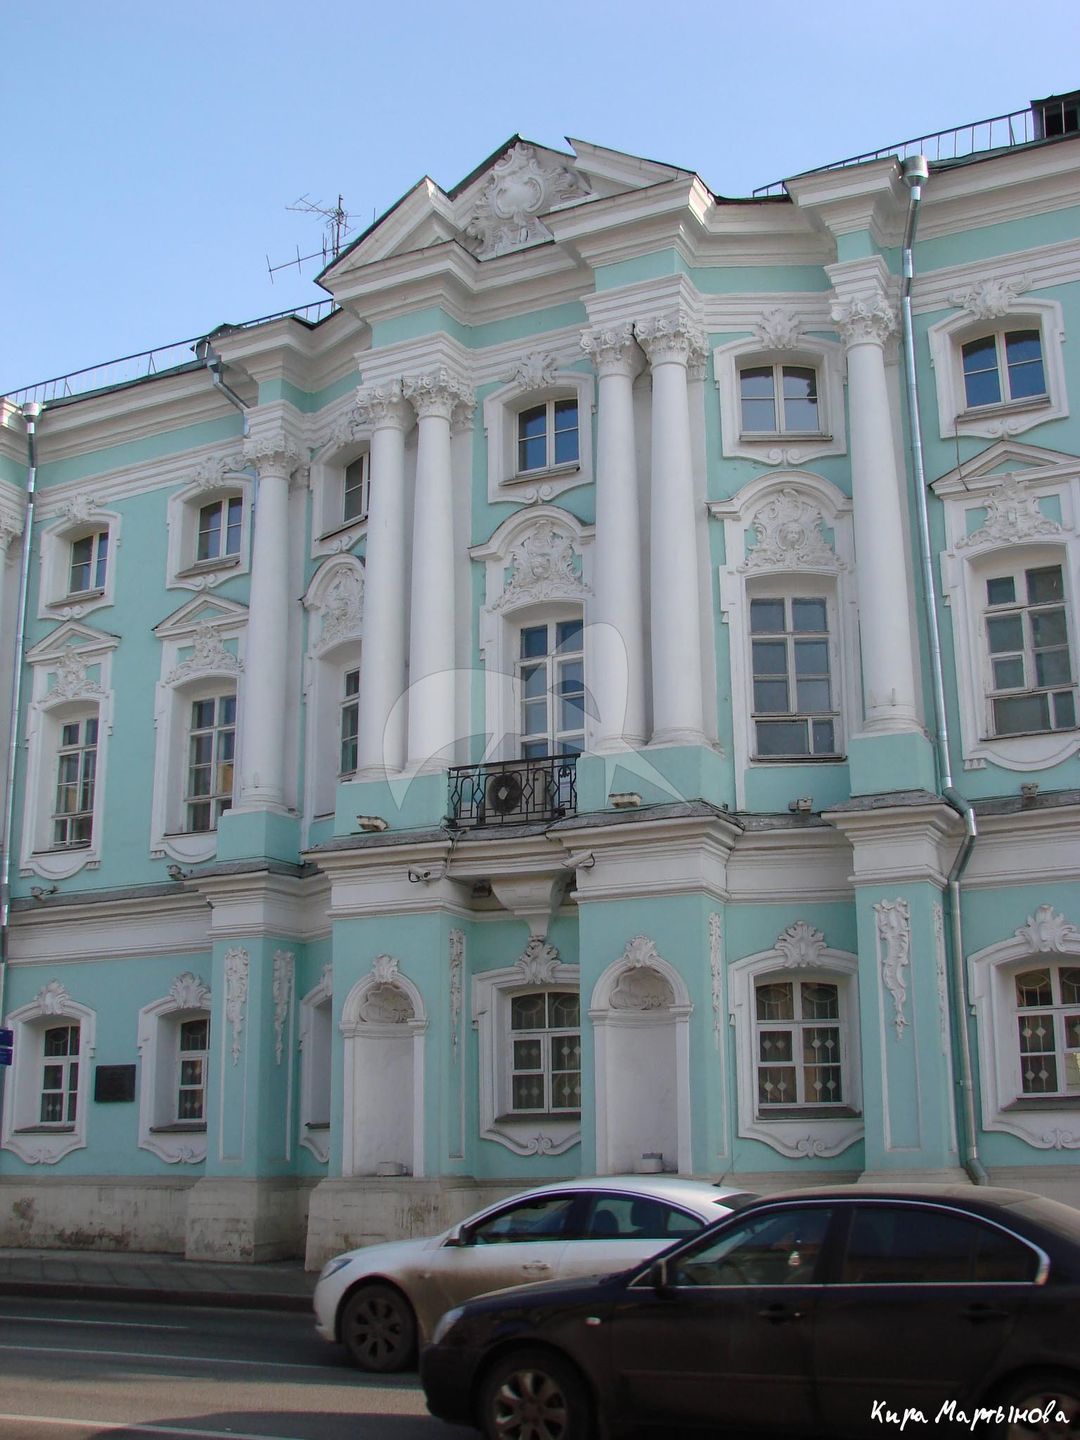 Главный дом с двумя боковыми флигелями, арх. Д.В. Ухтомский, дом Апраксина, 1766-1768 гг.